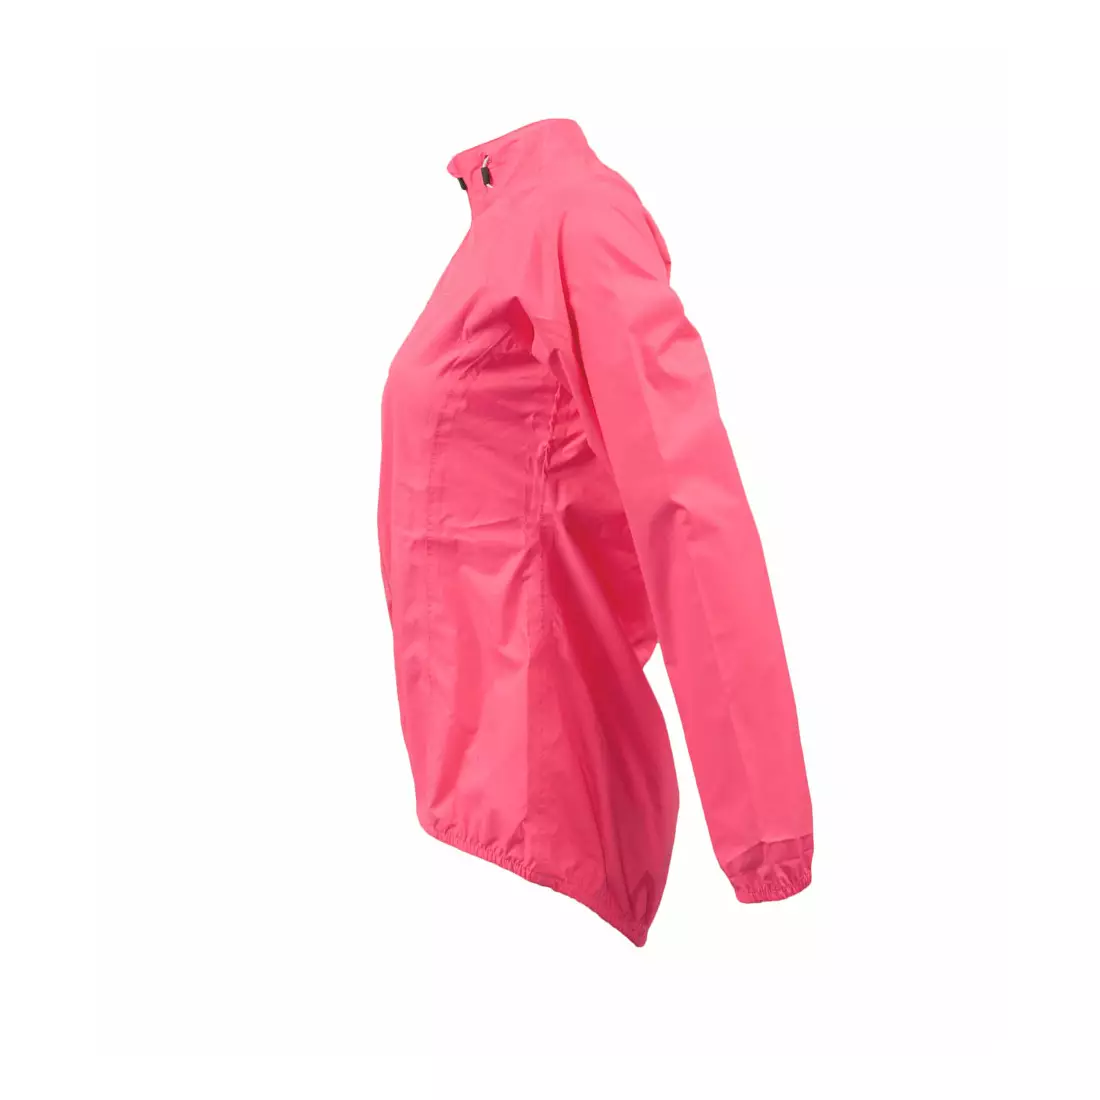 DARE2B Evident dámska cyklistická bunda do dažďa DWW096-72P, farba: ružová